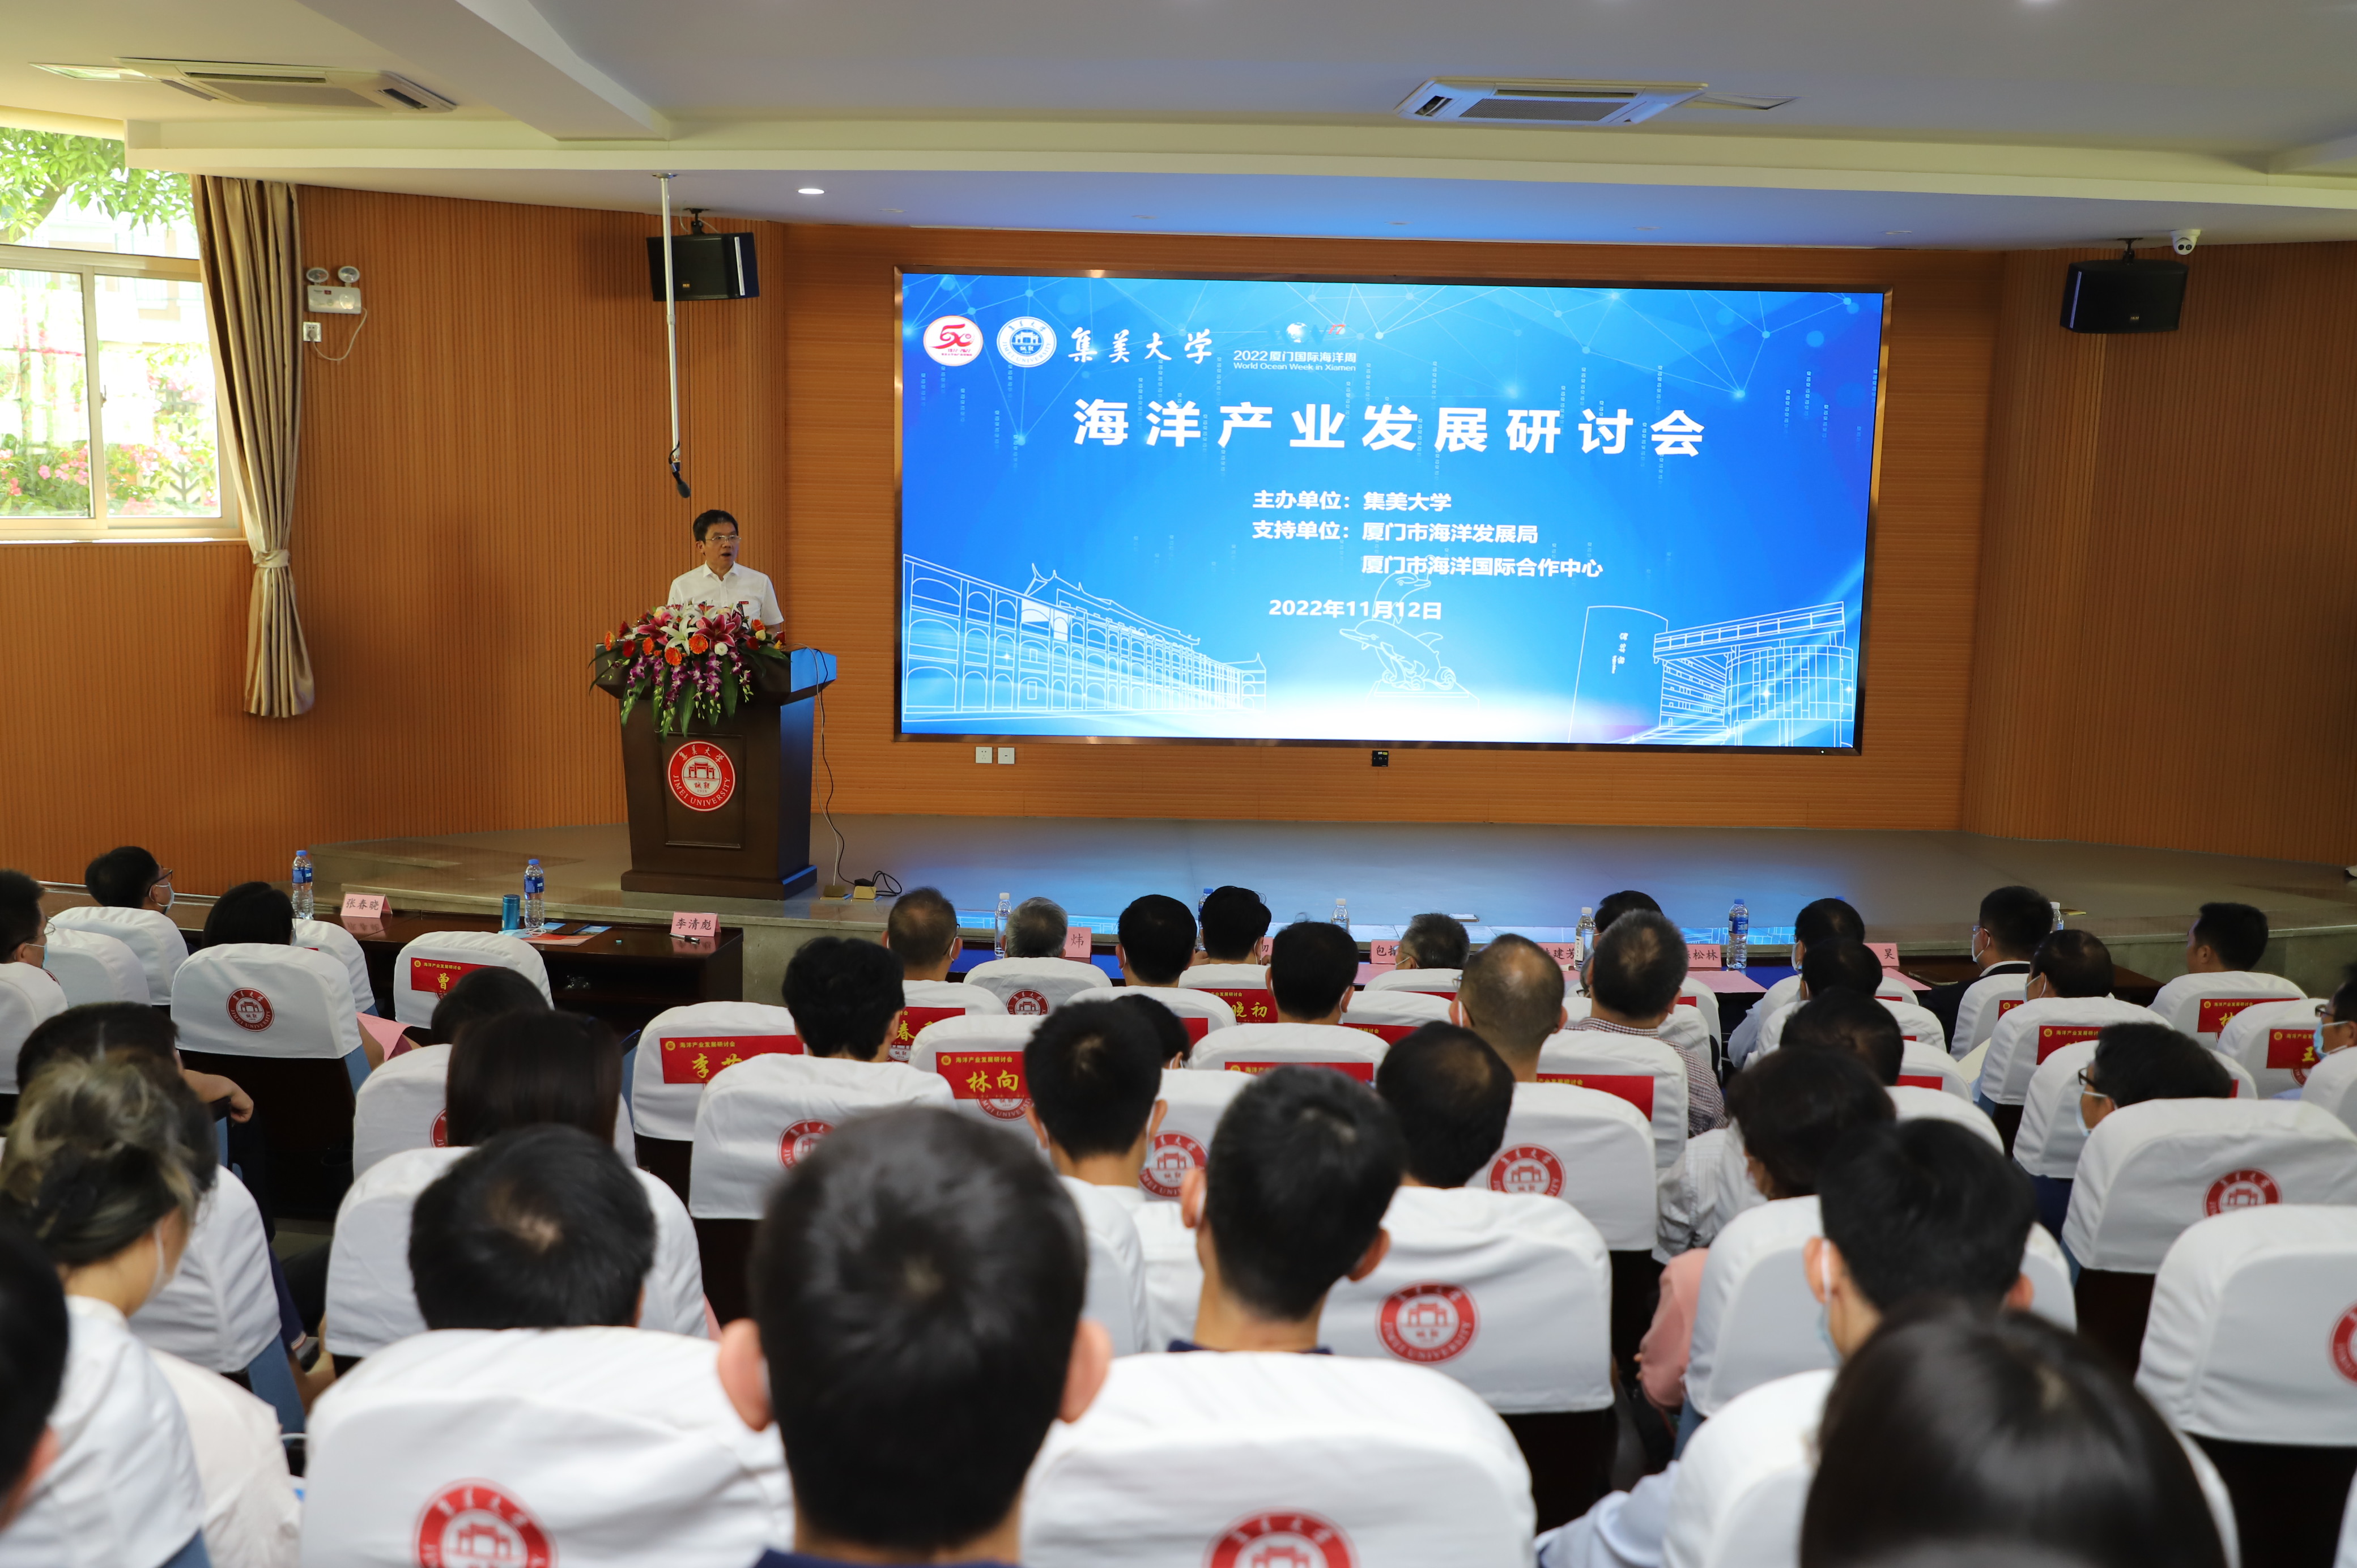 2022 Marine Industry Development Forum held in Xiamen